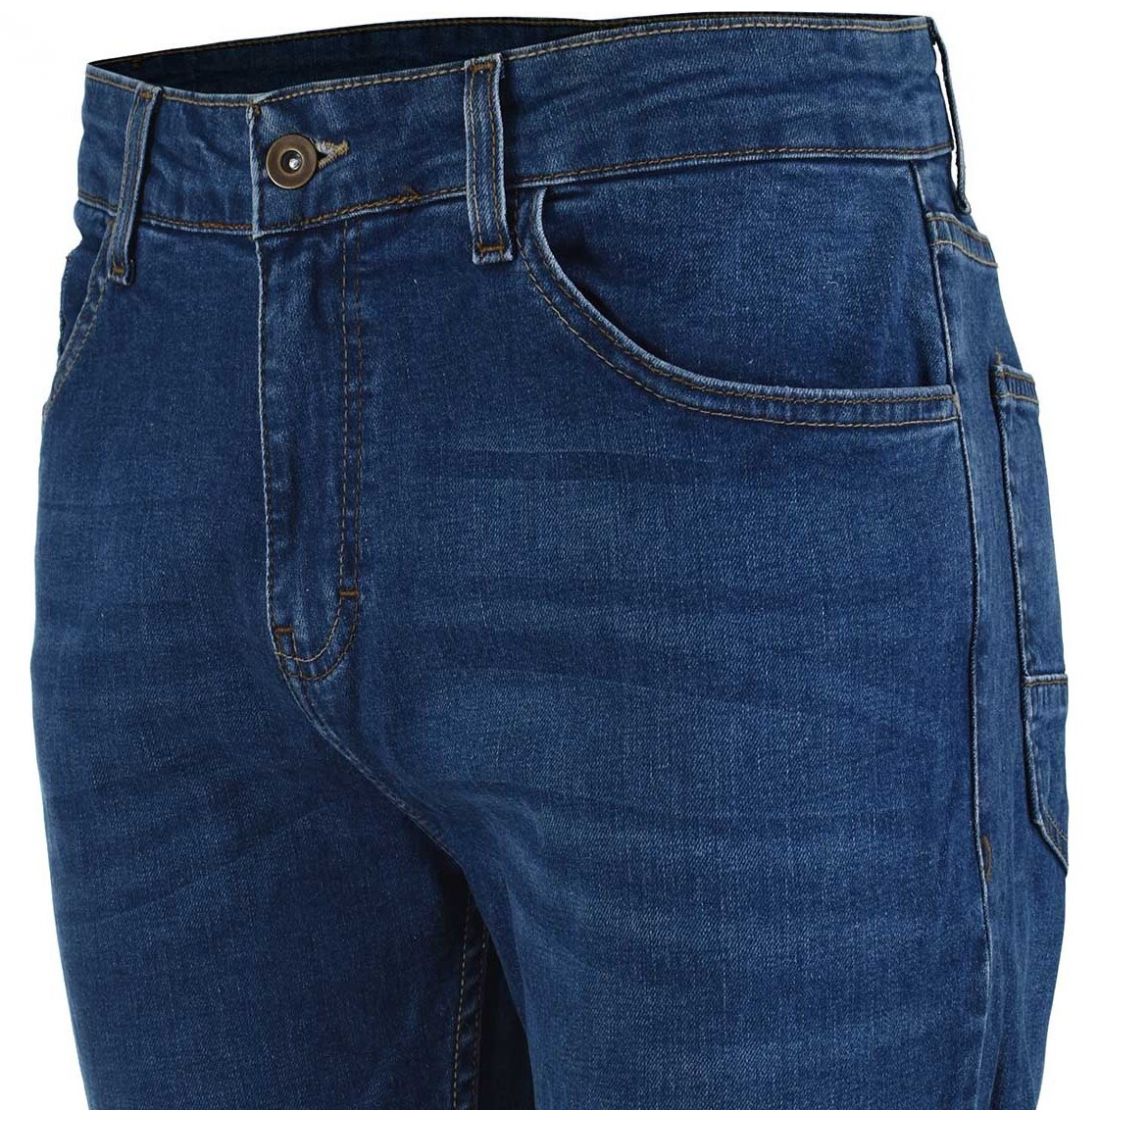 Jeans Azul para Caballero Carlo Corinto Modelo 30125-4